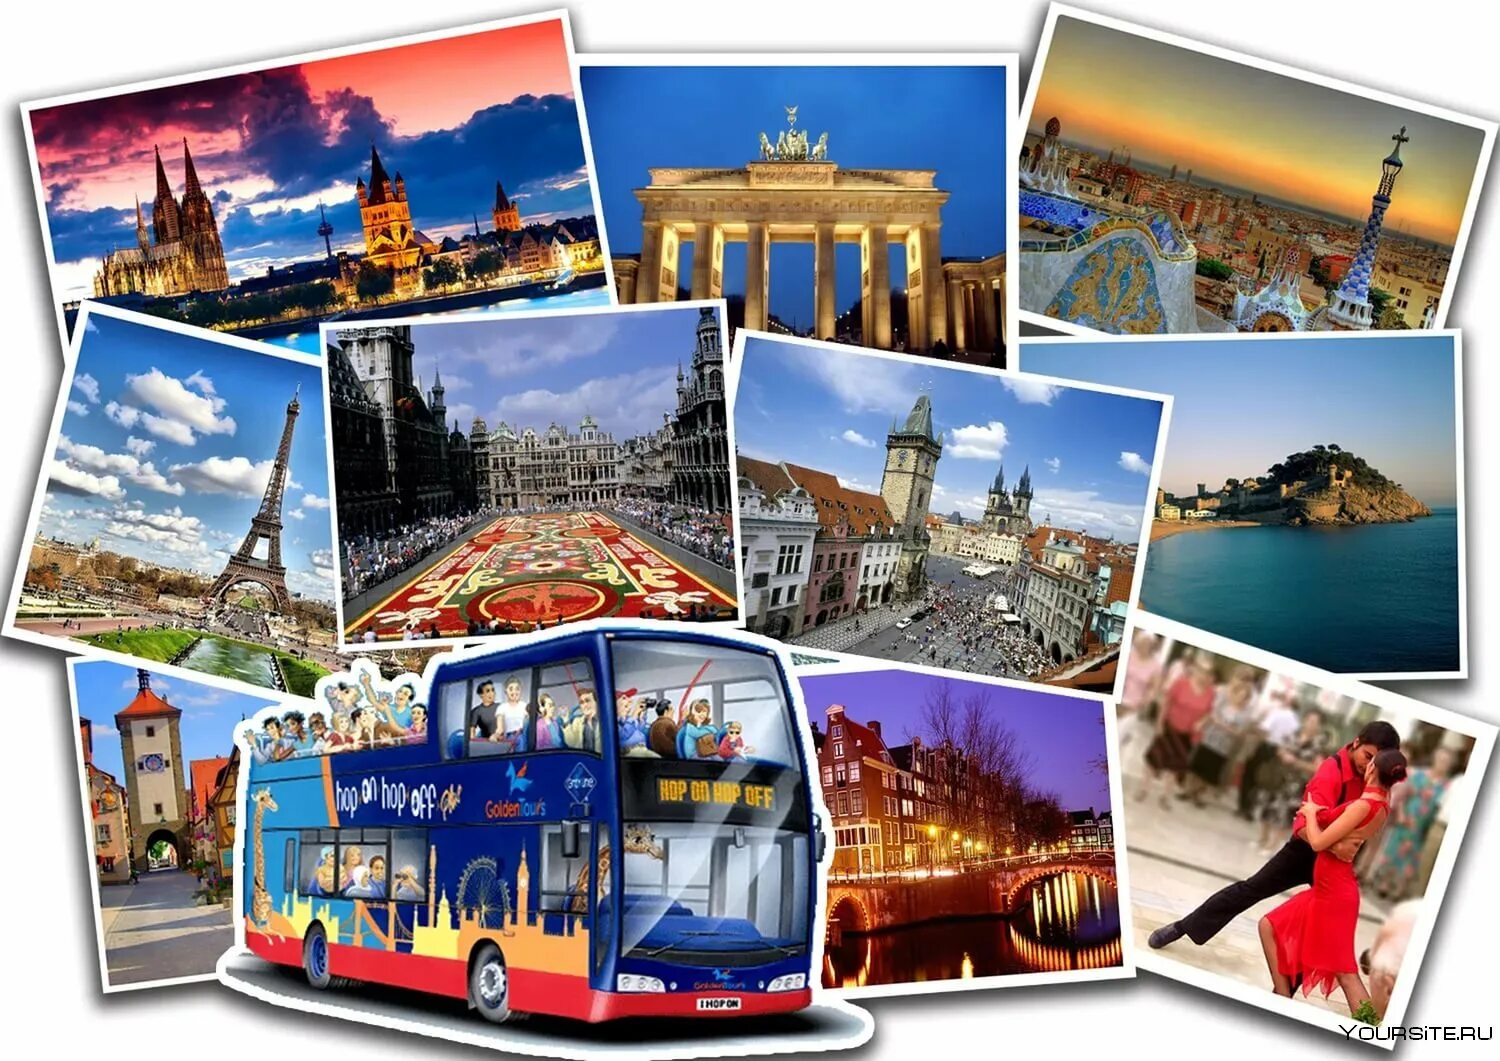 Турфирмы твери автобусные туры. Путешествие по Европе. Туристический коллаж. Экскурсионно-познавательный туризм. Путешествия коллаж.